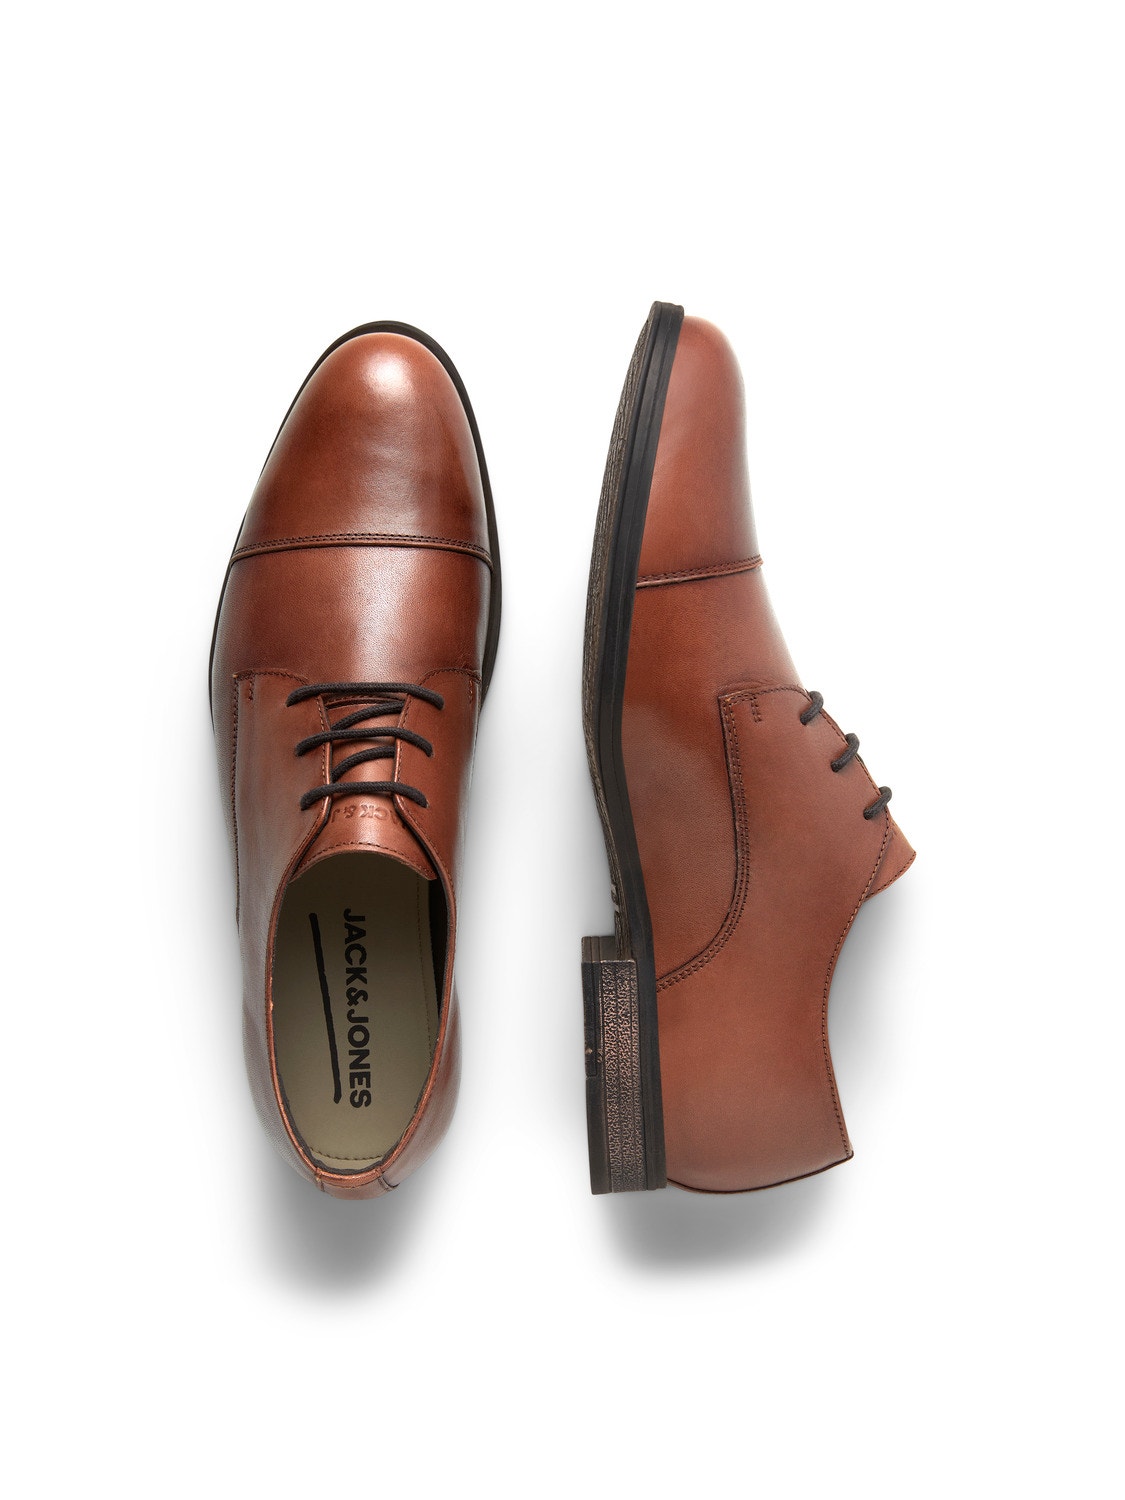 Jack & Jones Leather Dress shoes -Cognac - 12217091